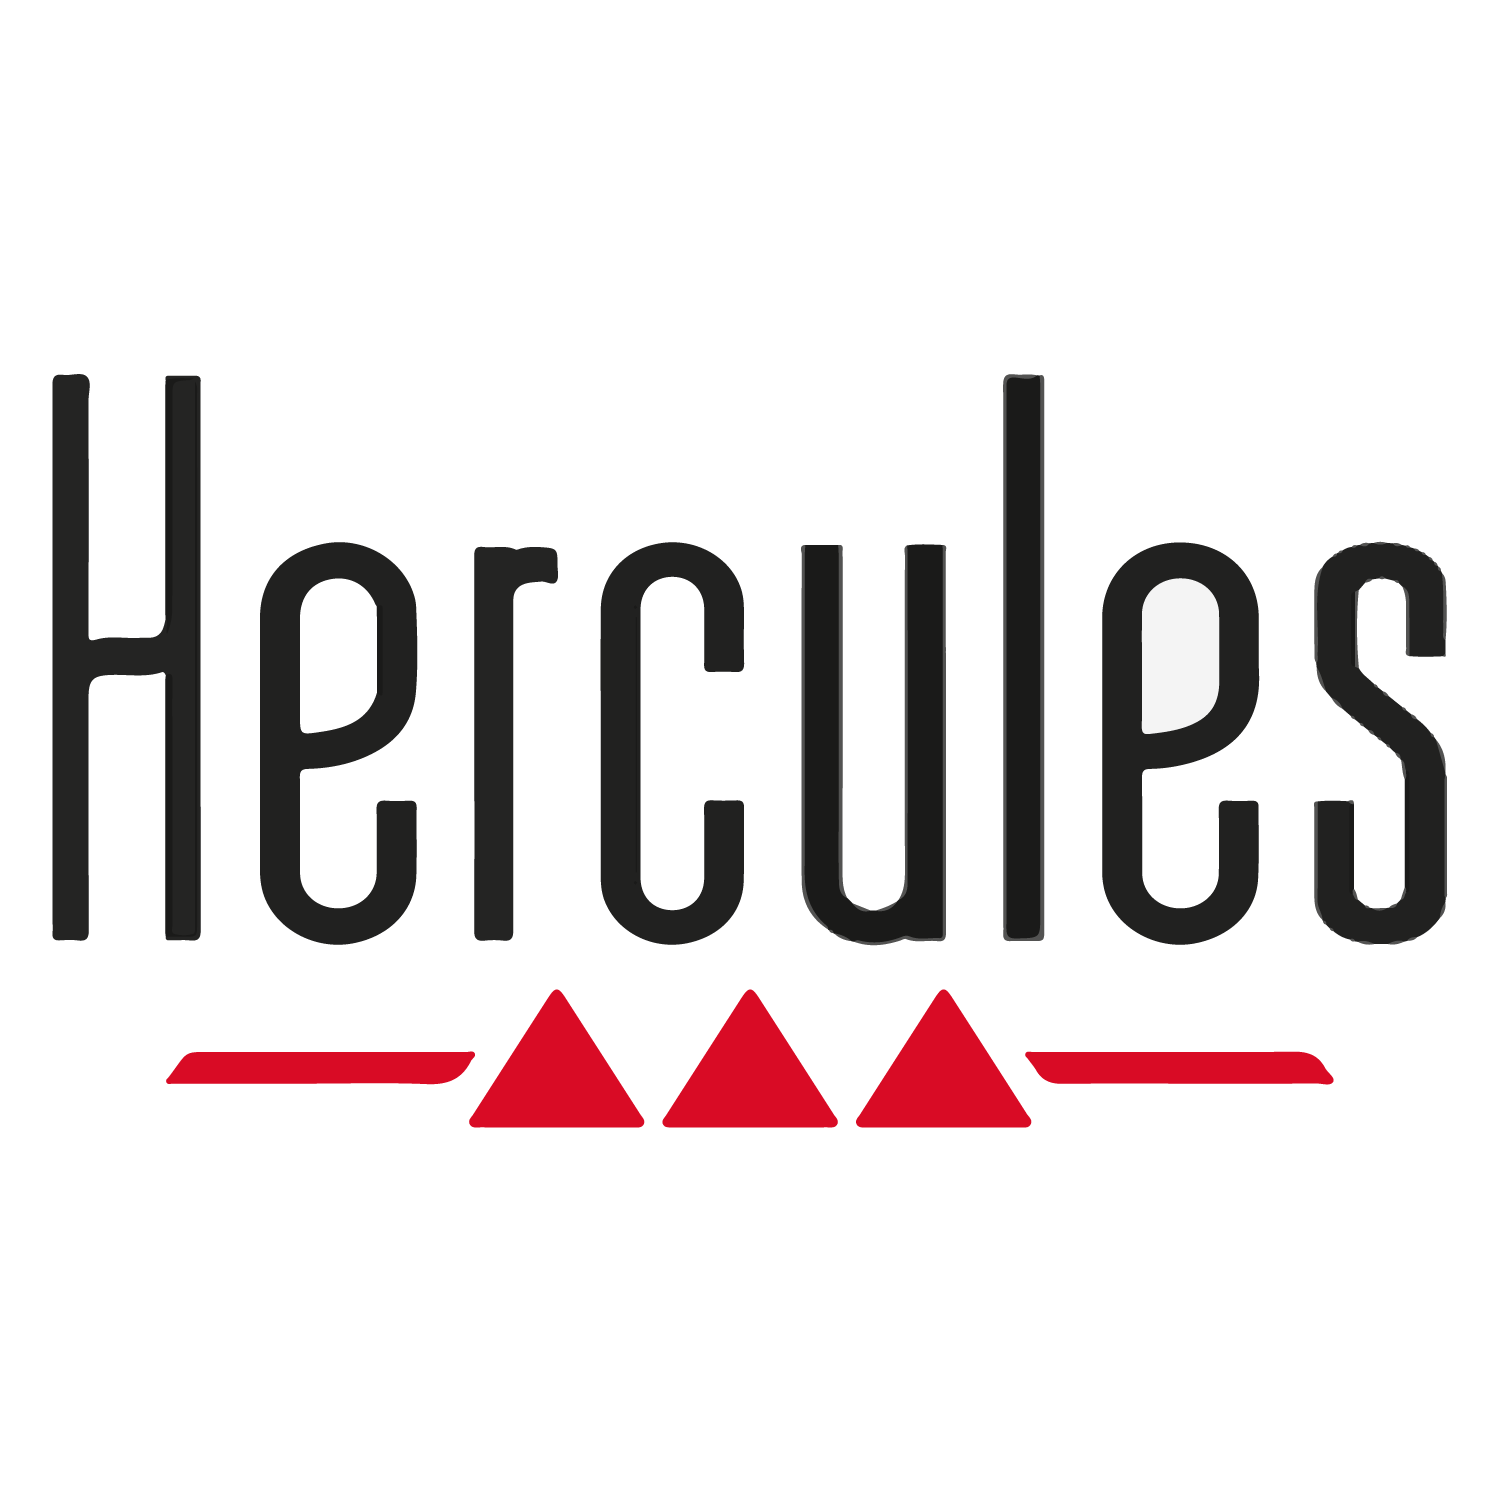 Hercules DJ